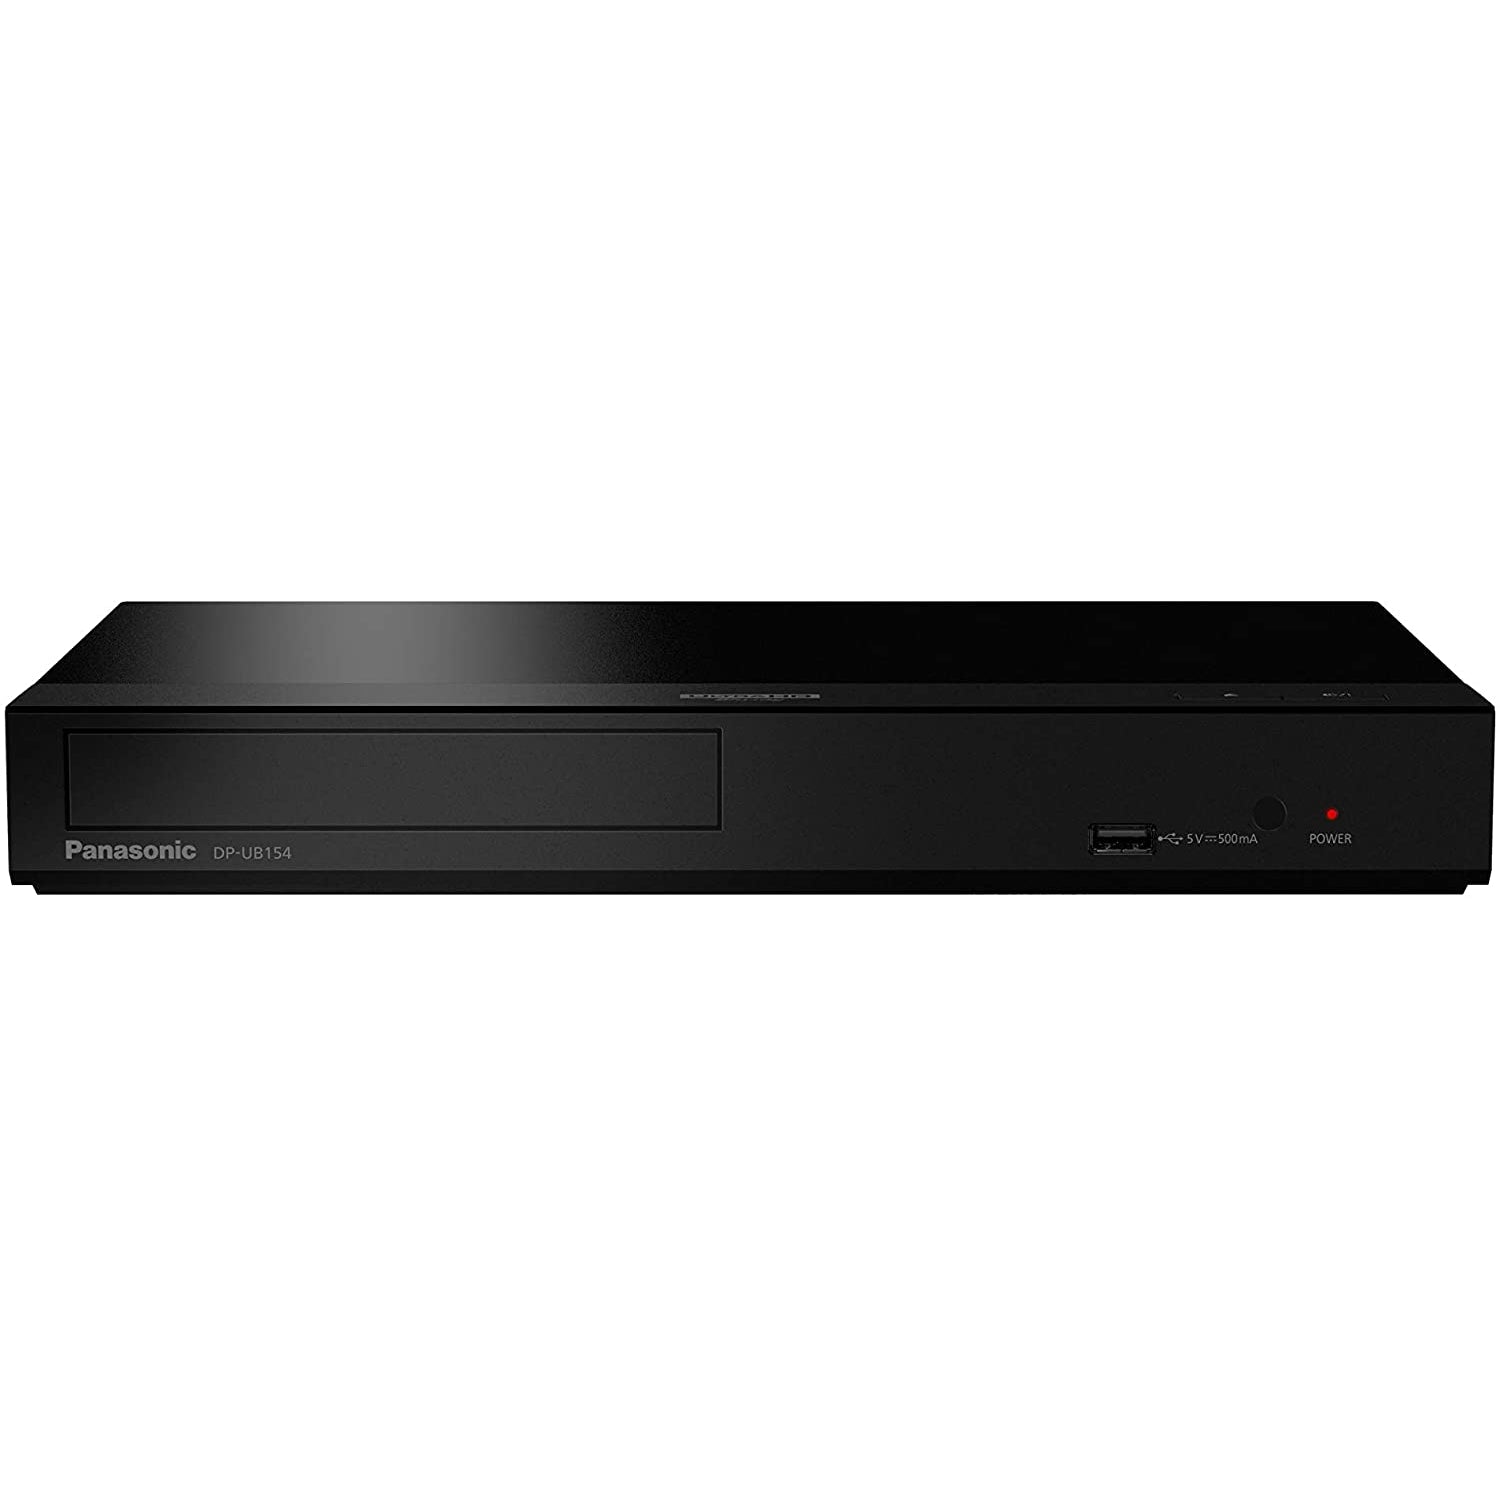 Panasonic DP-UB154EG-K Ultra HD Blu-ray Player in Black (HDR10+, 4K Blu-ray Disc, 4K VoD, Dolby Atmos, HDMI, USB)